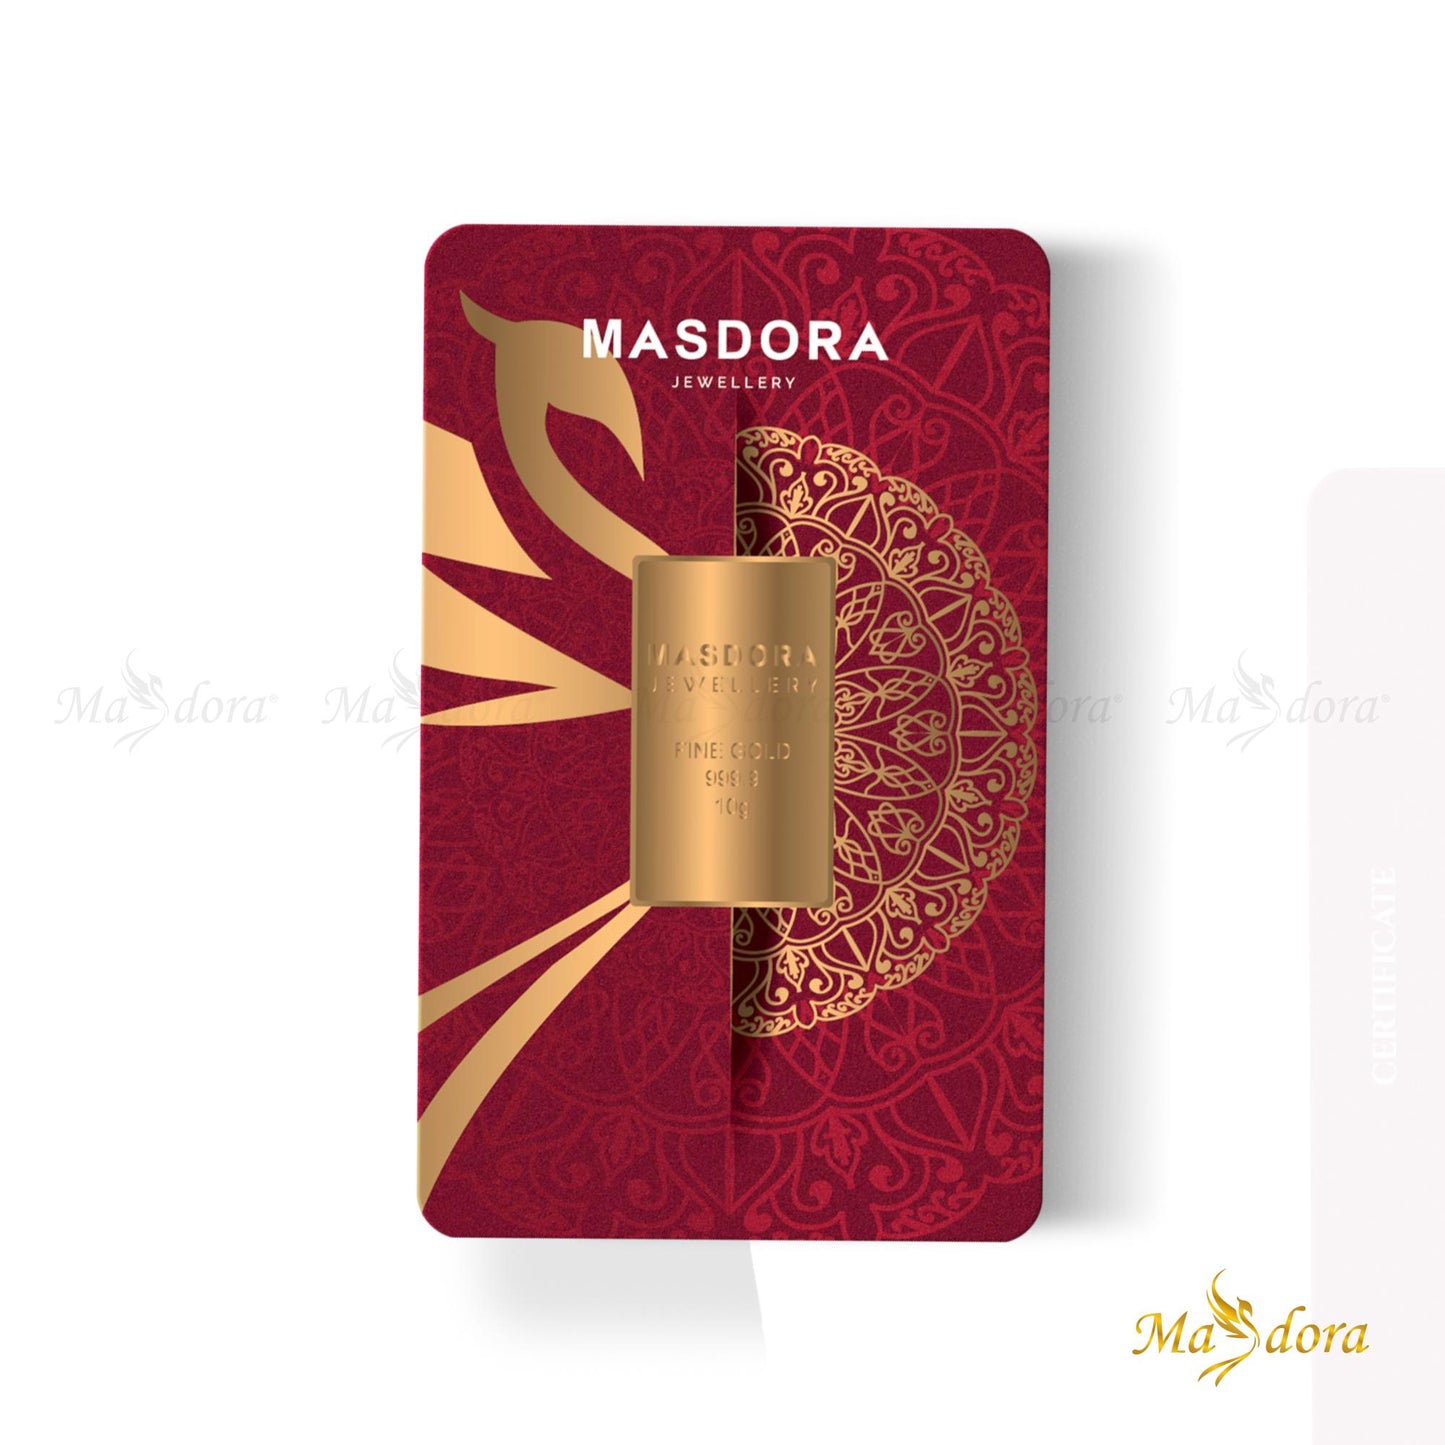 Masdora Signature Gold Bullion Bar 10g (Emas 999.9)